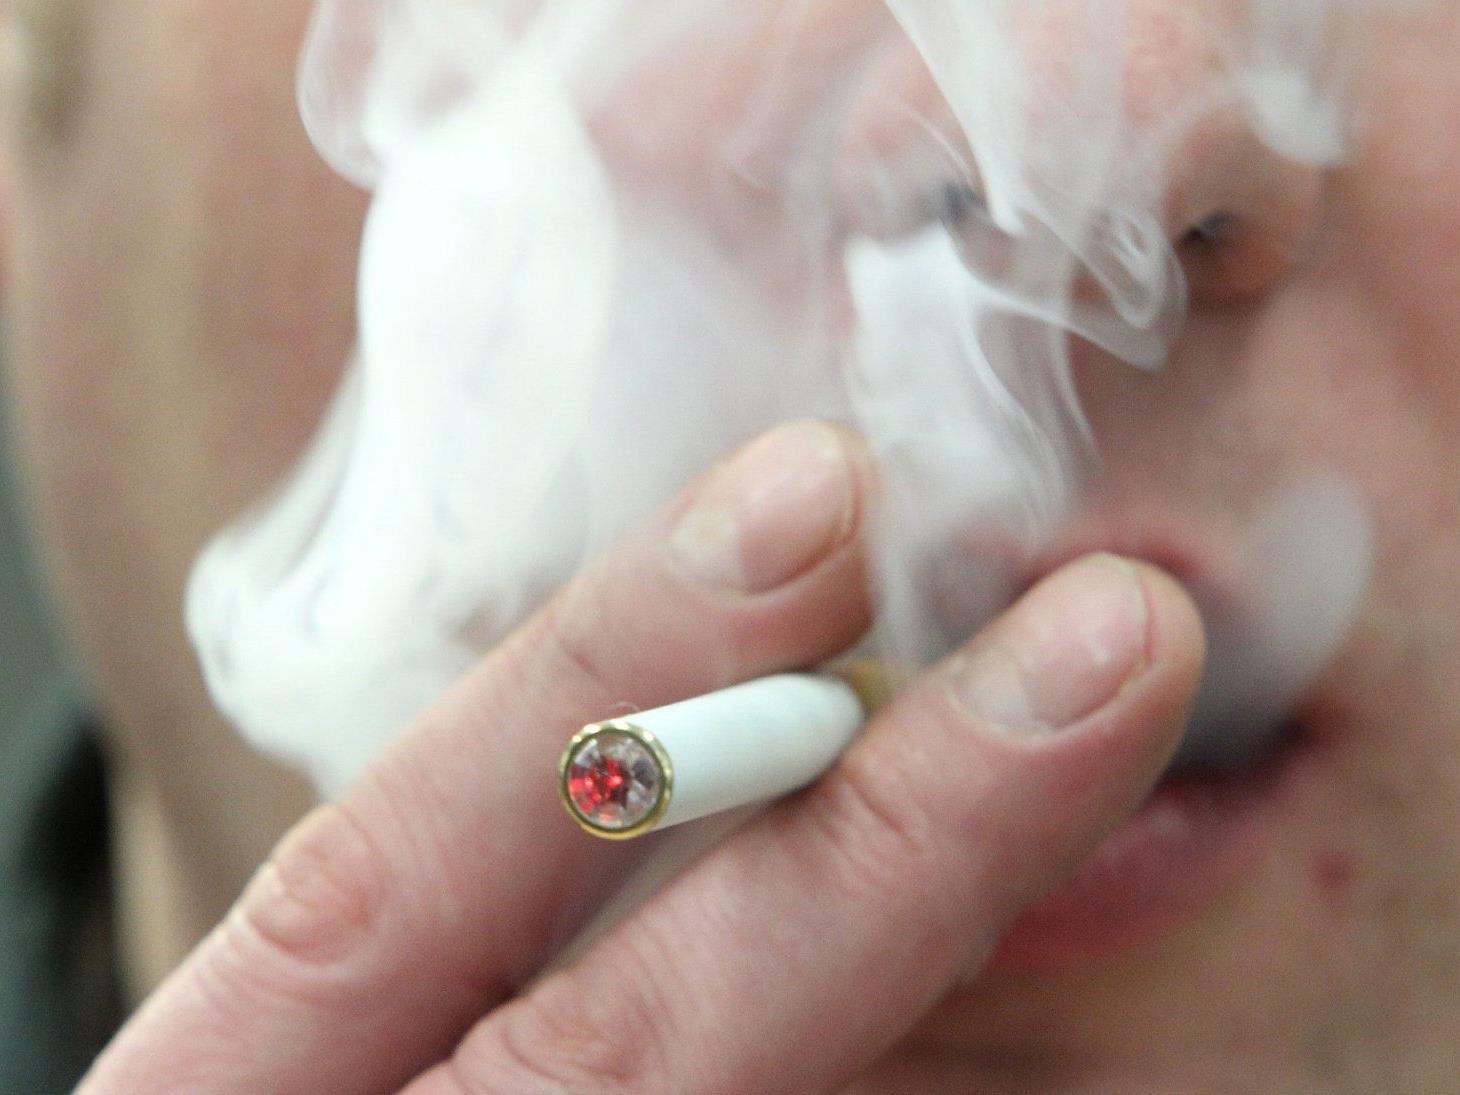 Zuerst fragten zwei Männer den 30-jährigen nach einer Zigarette, dann überfielen sie ihn.